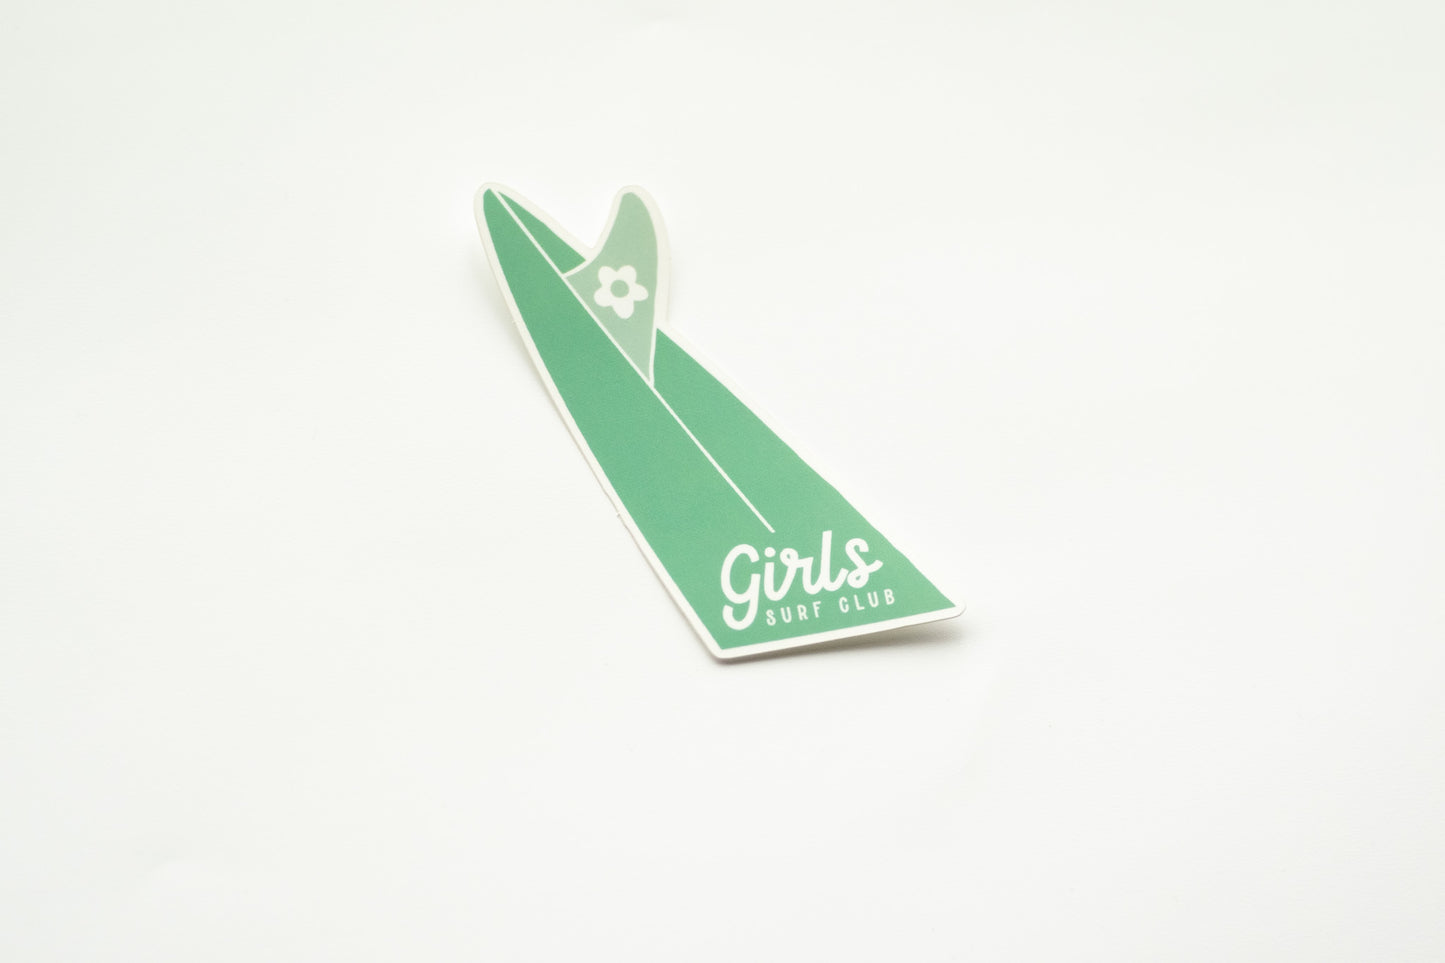 Girls Surf Club Vinyl Sticker